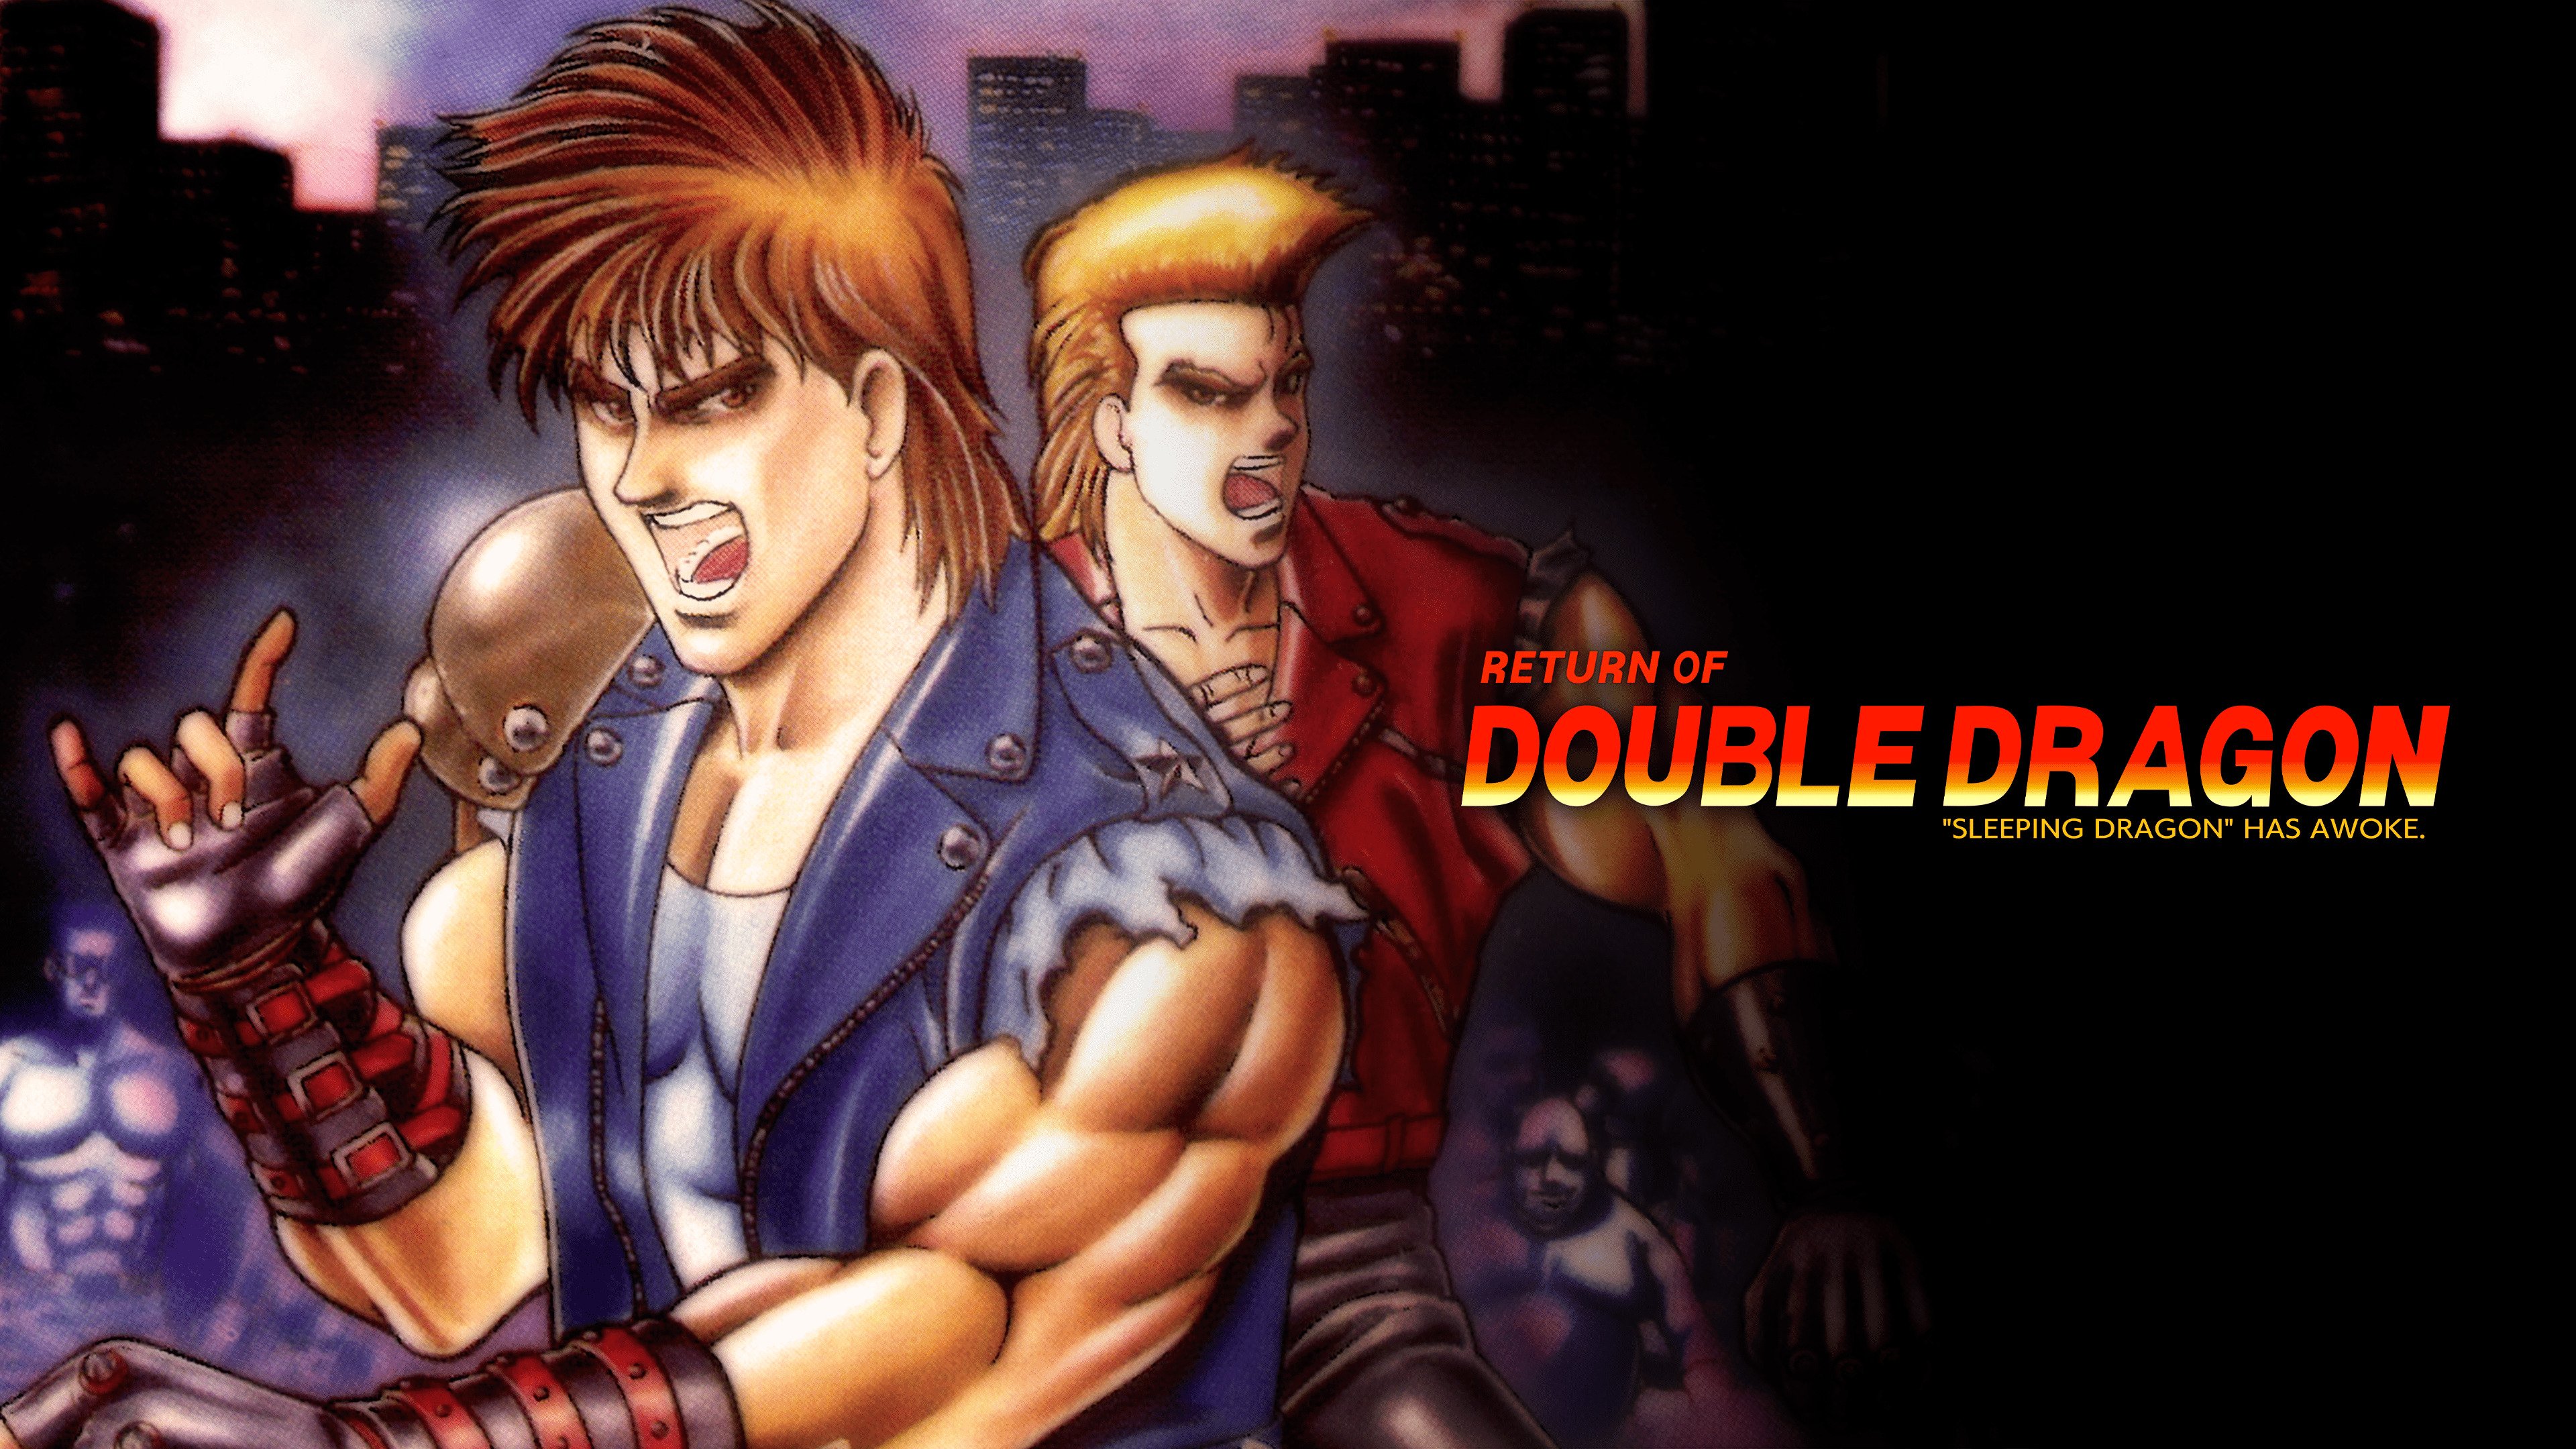  Retroism Return of Double Dragon (SNES Compatible